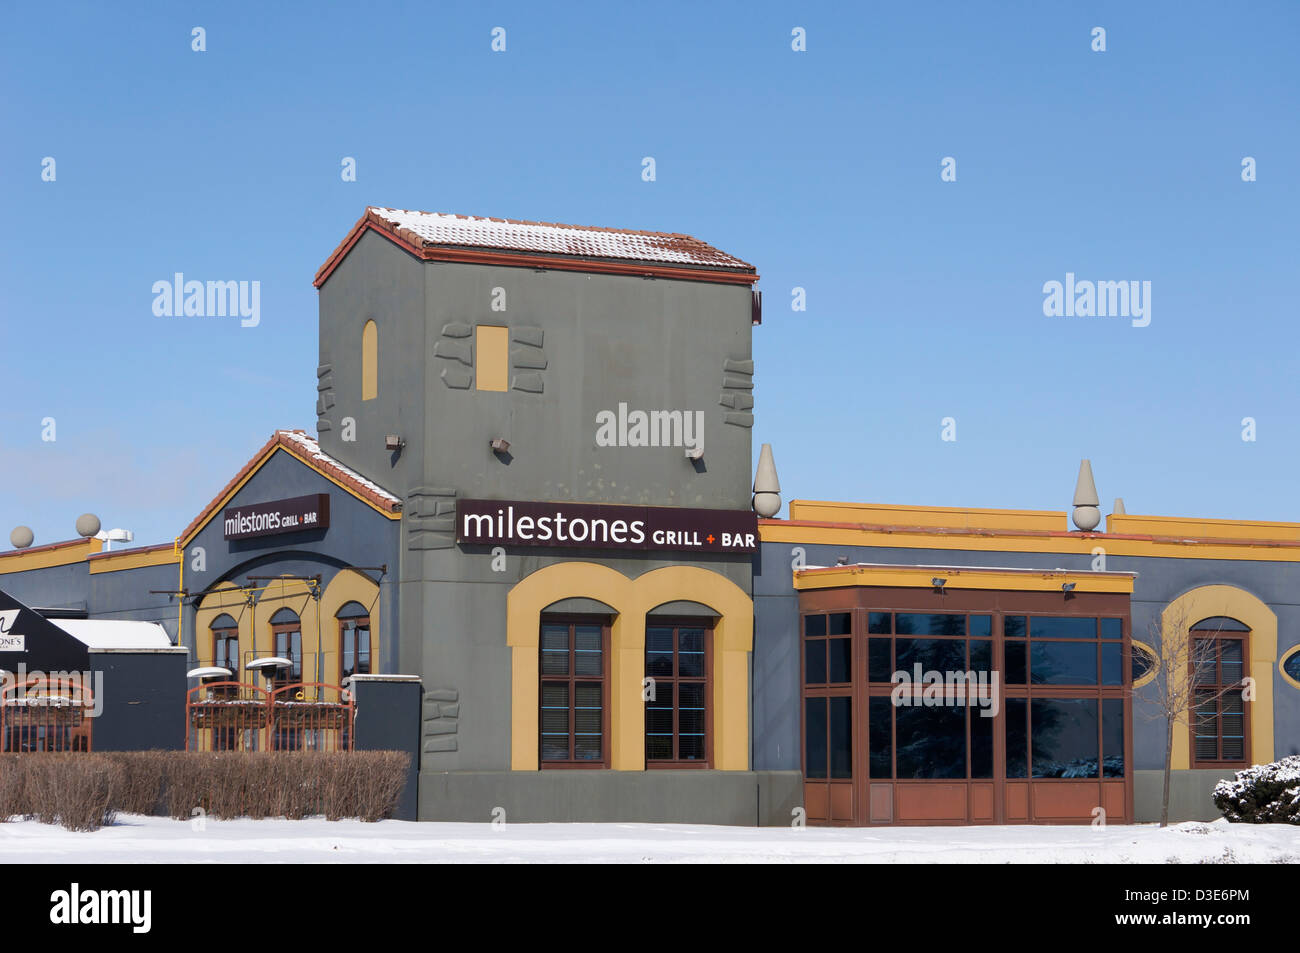 Sig til side timeren Elendig Milestones restaurant hi-res stock photography and images - Alamy